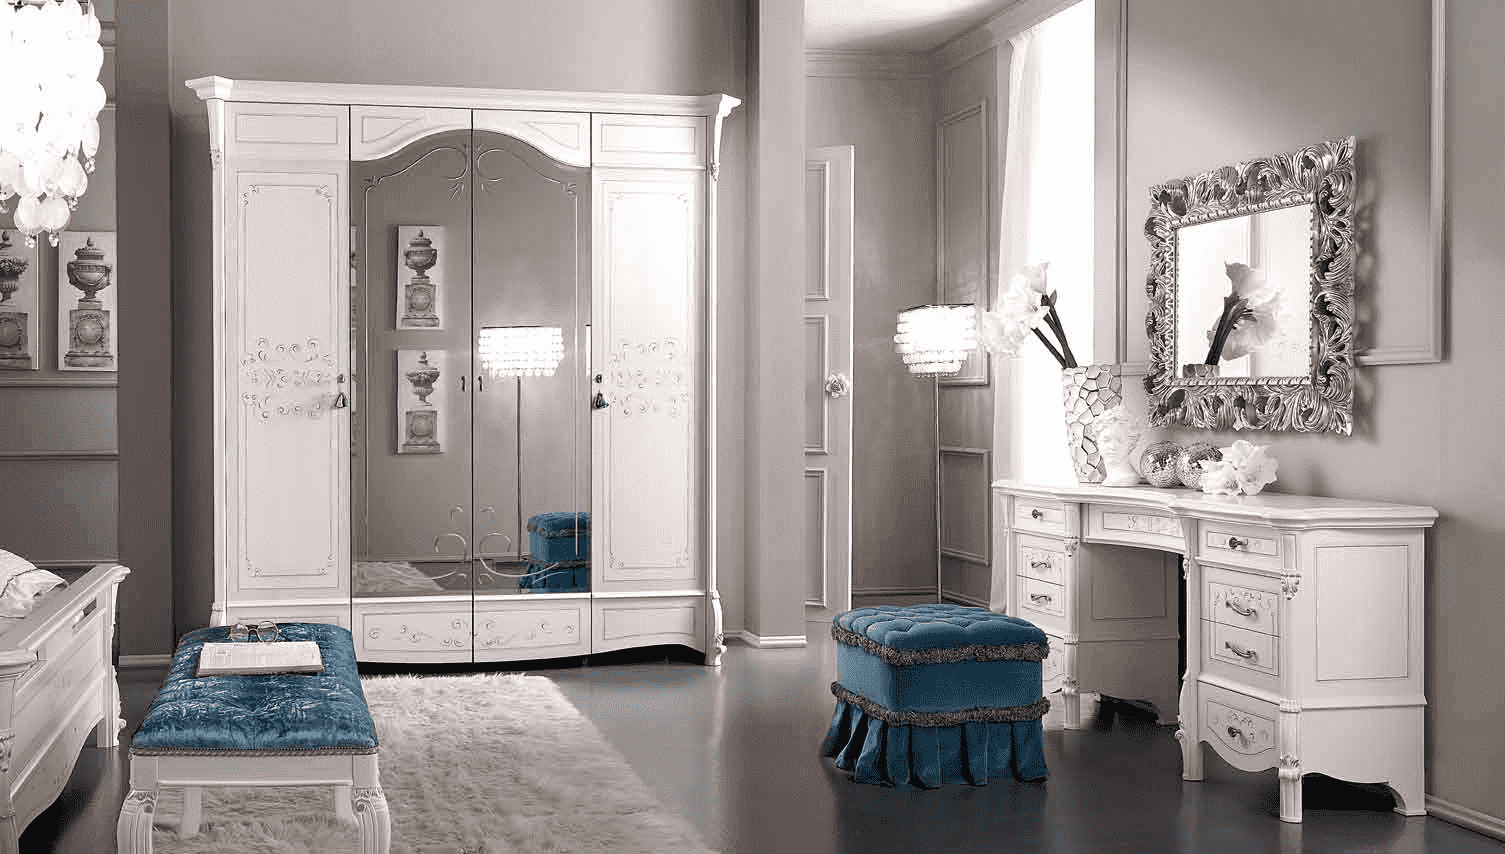 Шкаф платяной Casa+39 Prestige laccato, 4-х дверный, с зеркалами, цвет: белый, 220x72x229 см (314)314